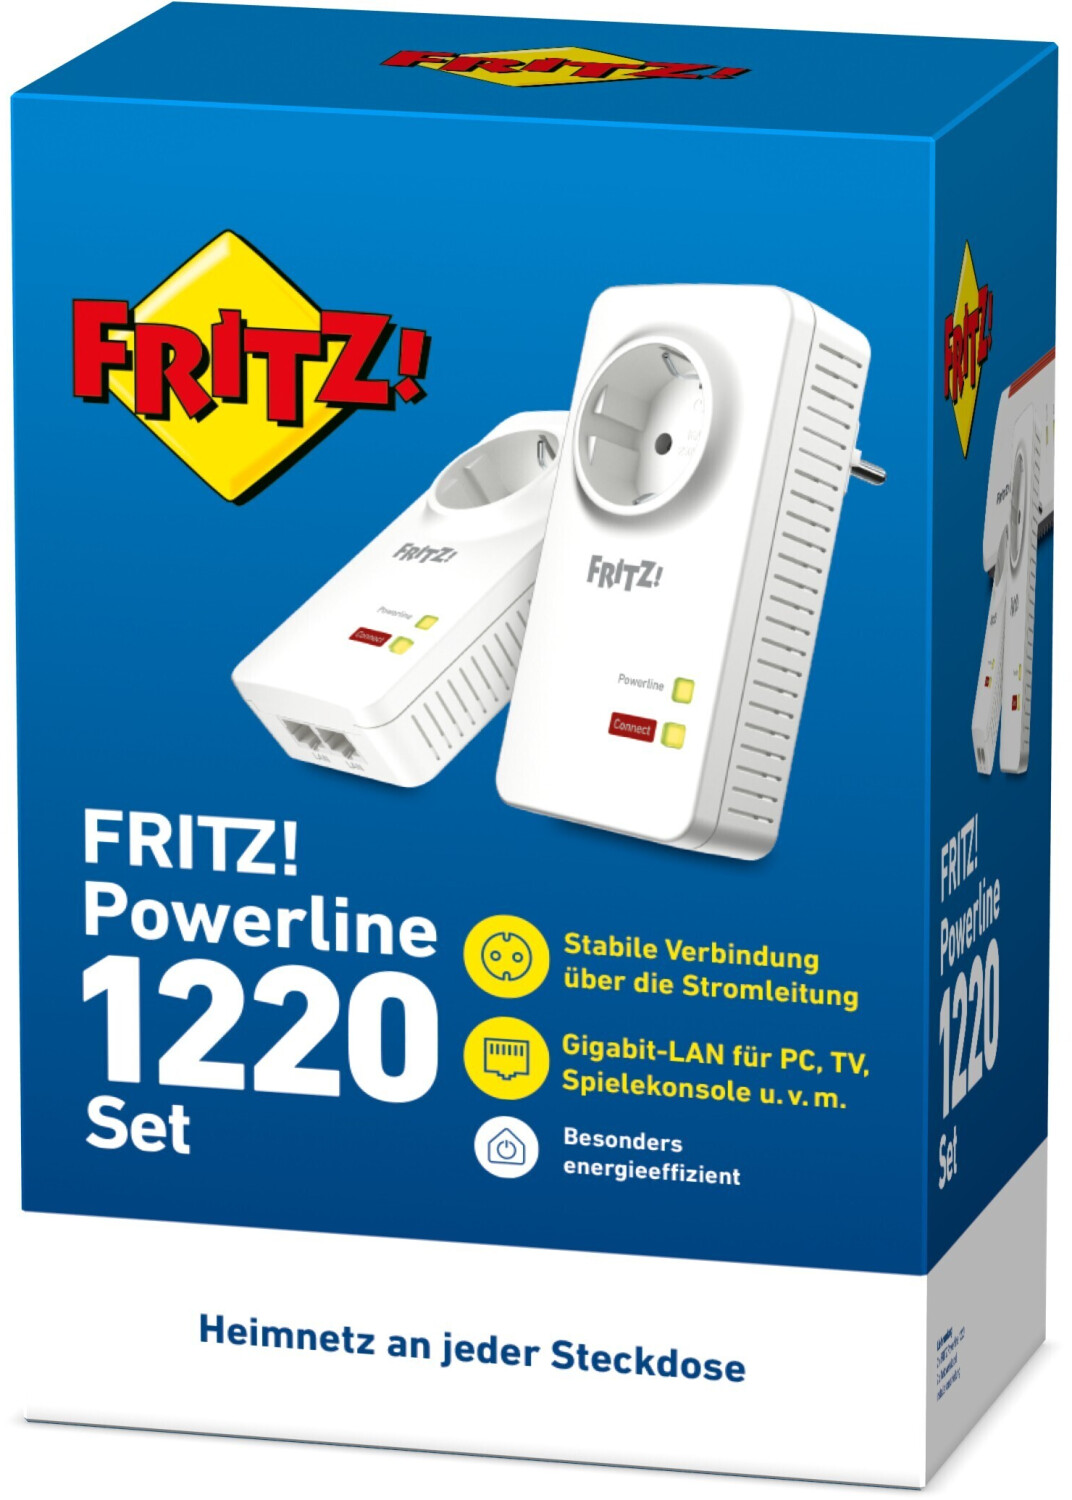 Fritz-Neuheiten von AVM: Router-Preise, Fensterkontakt & Powerline